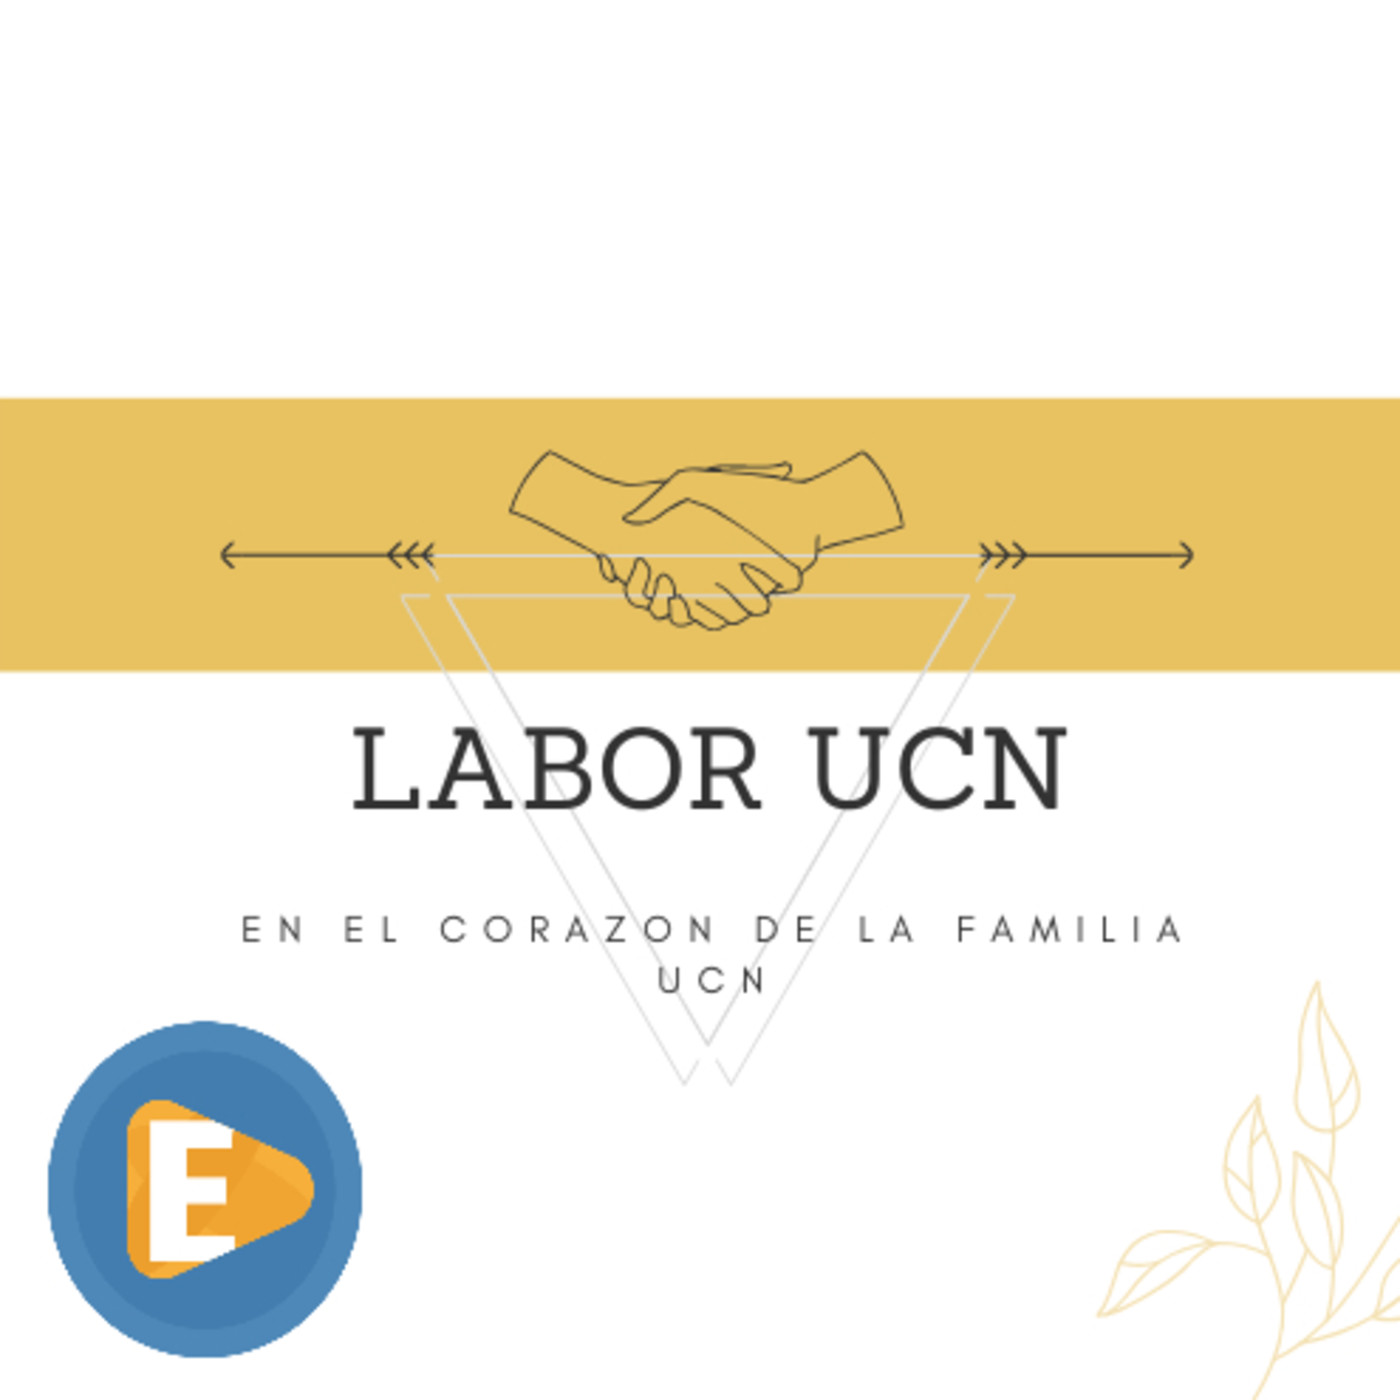 Labor UCN